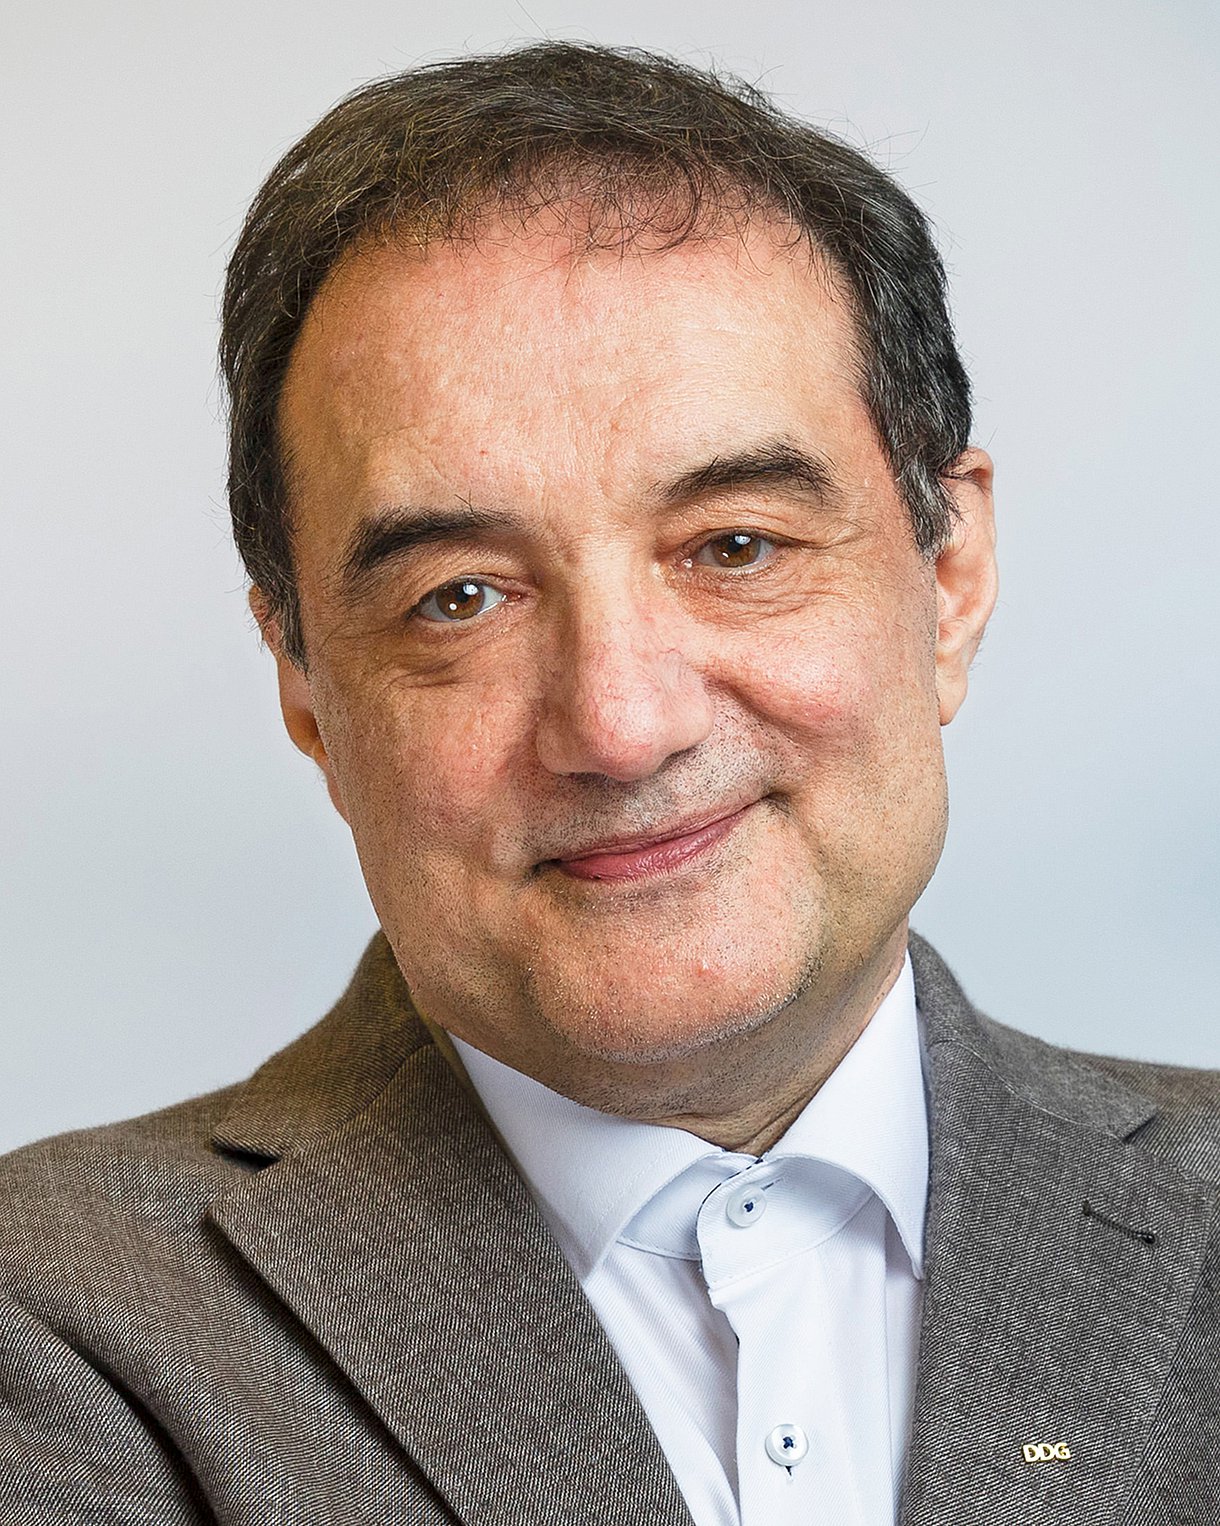 Foto: Porträt von Prof. Dr. Andreas Fritsche, Präsident der Deutschen Diabetes Gesellschaft (DDG)